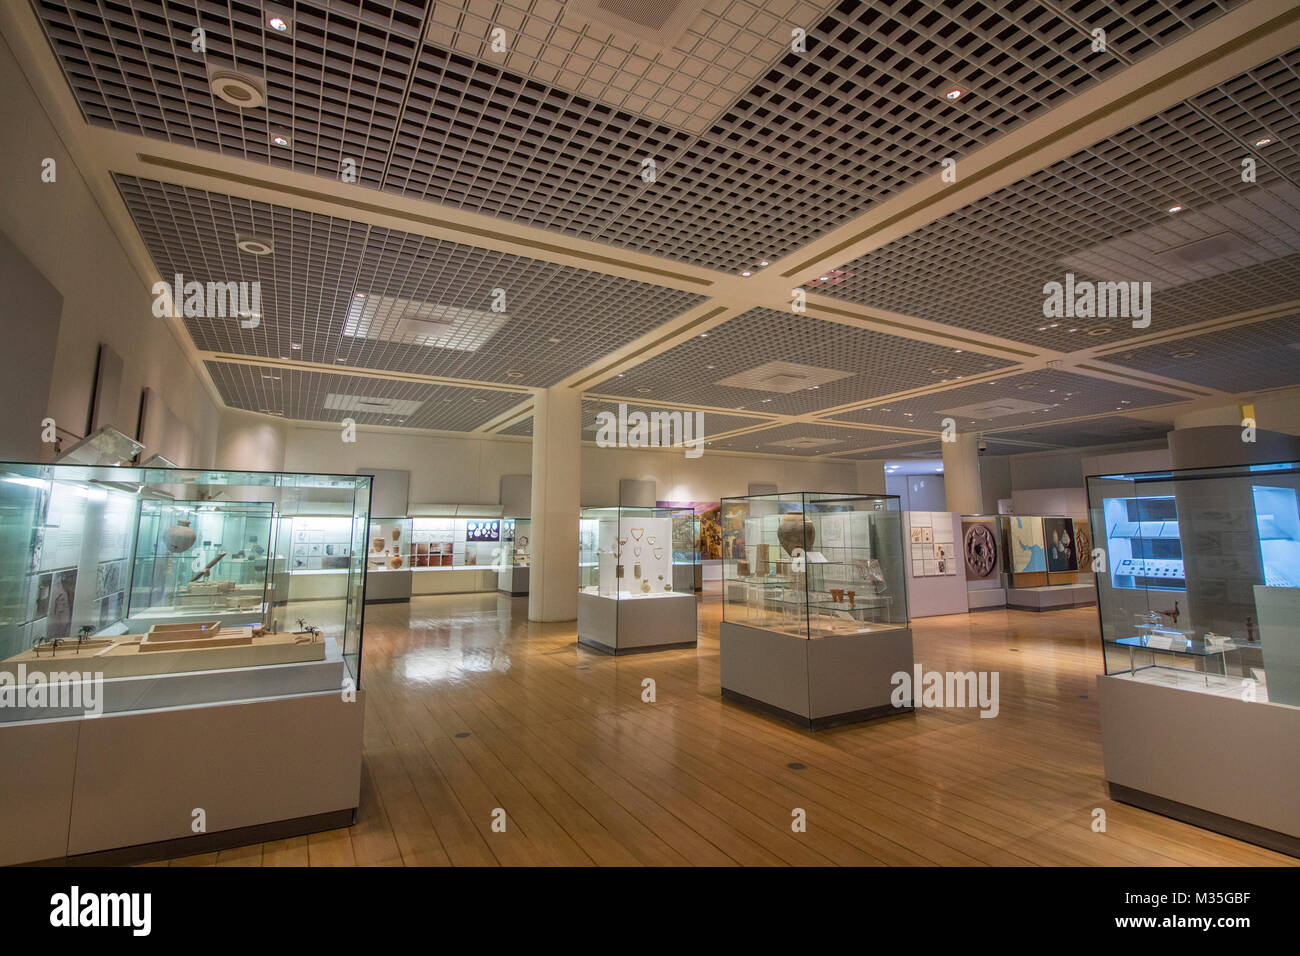 L'intérieur de la salle d'exposition Dilmun Bahrain National Museum est le plus grand et un des plus vieux musées de Bahreïn, à proximité de la King Faisal hig Banque D'Images